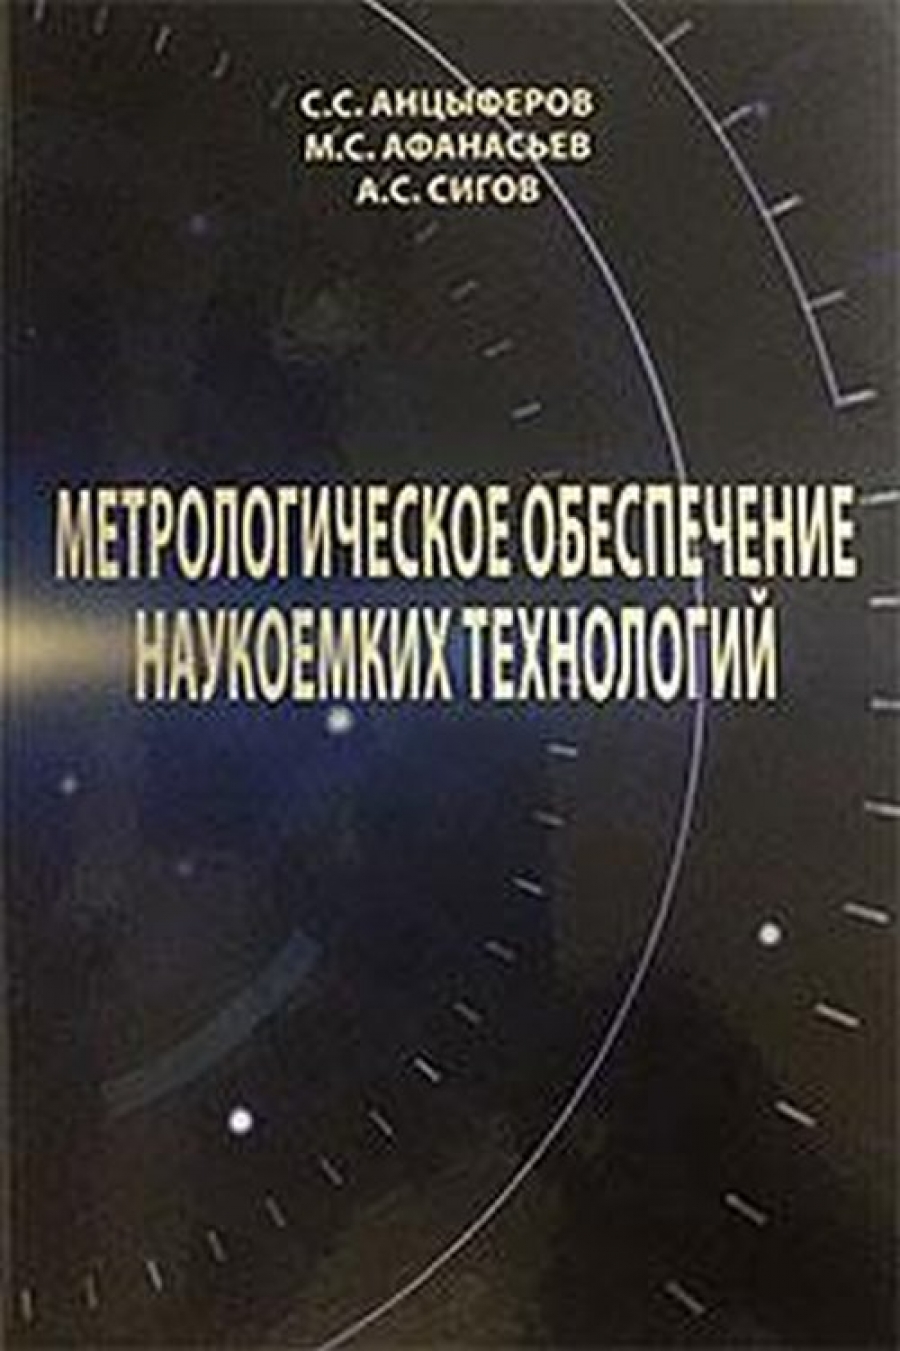 Анцыферов С.С., Афанасьев М.С. Метрологическое обеспечение наукоемких технологий 